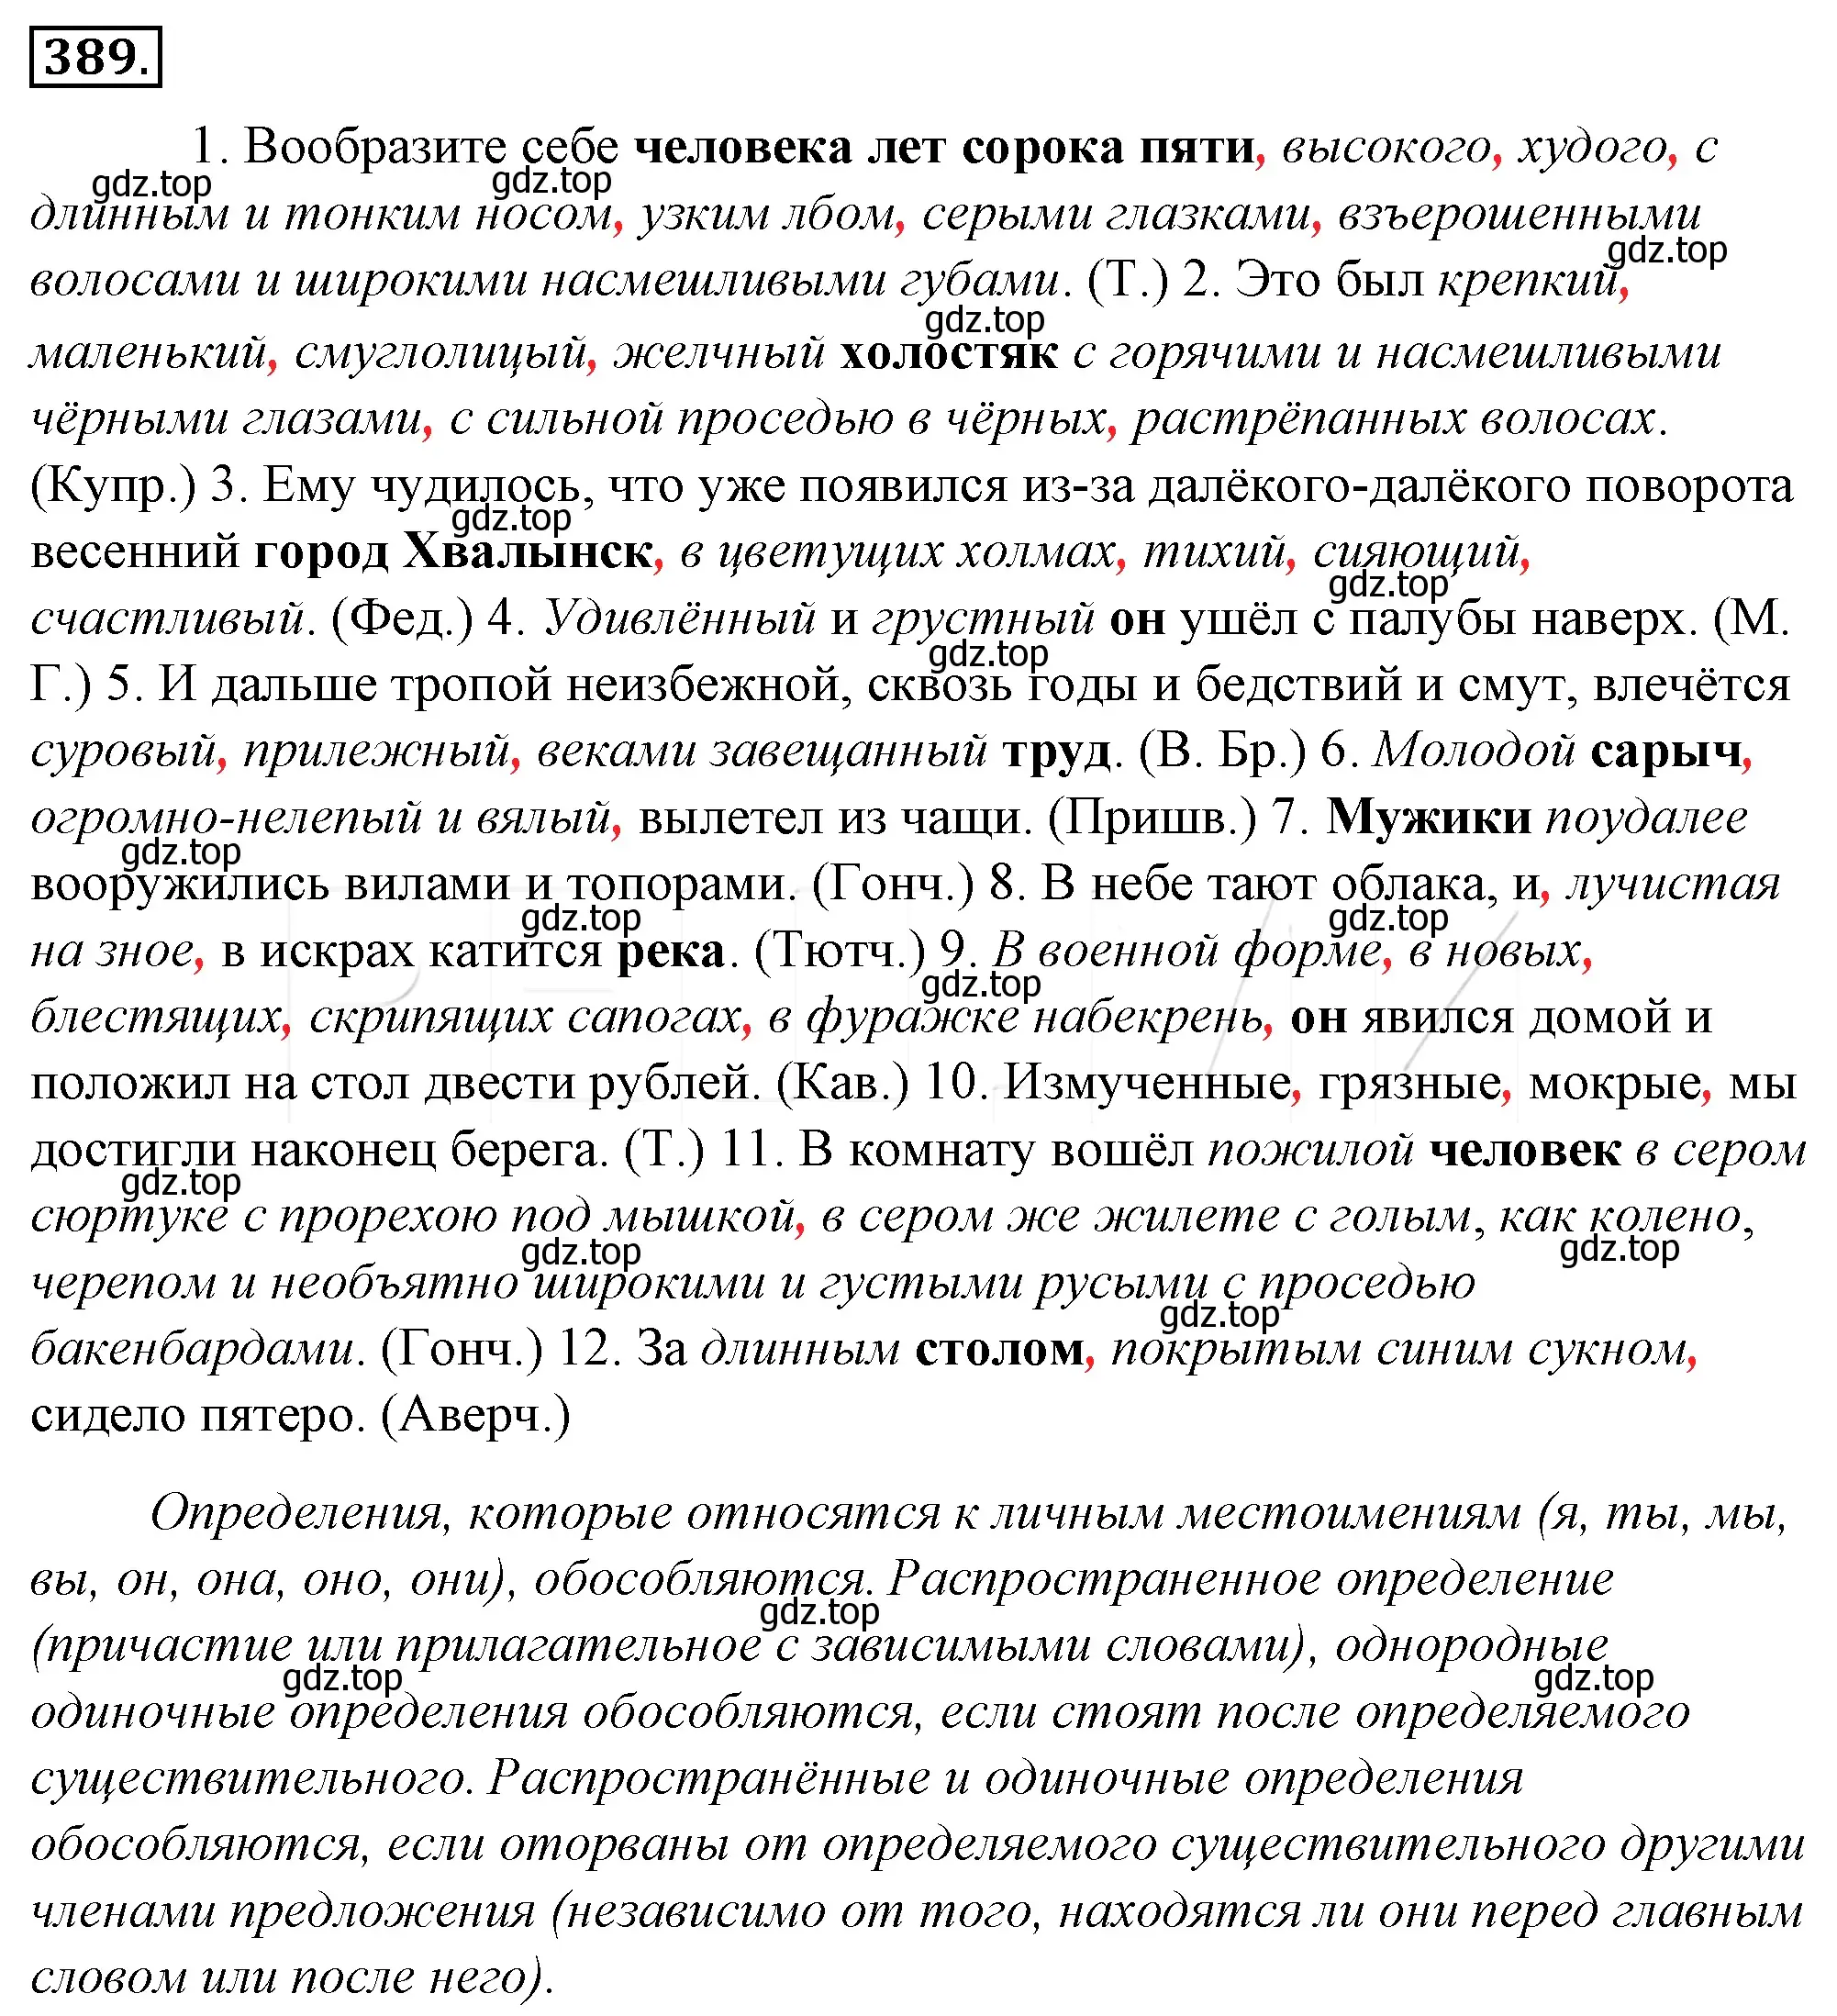 Решение 4. номер 54 (страница 73) гдз по русскому языку 10-11 класс Гольцова, Шамшин, учебник 2 часть